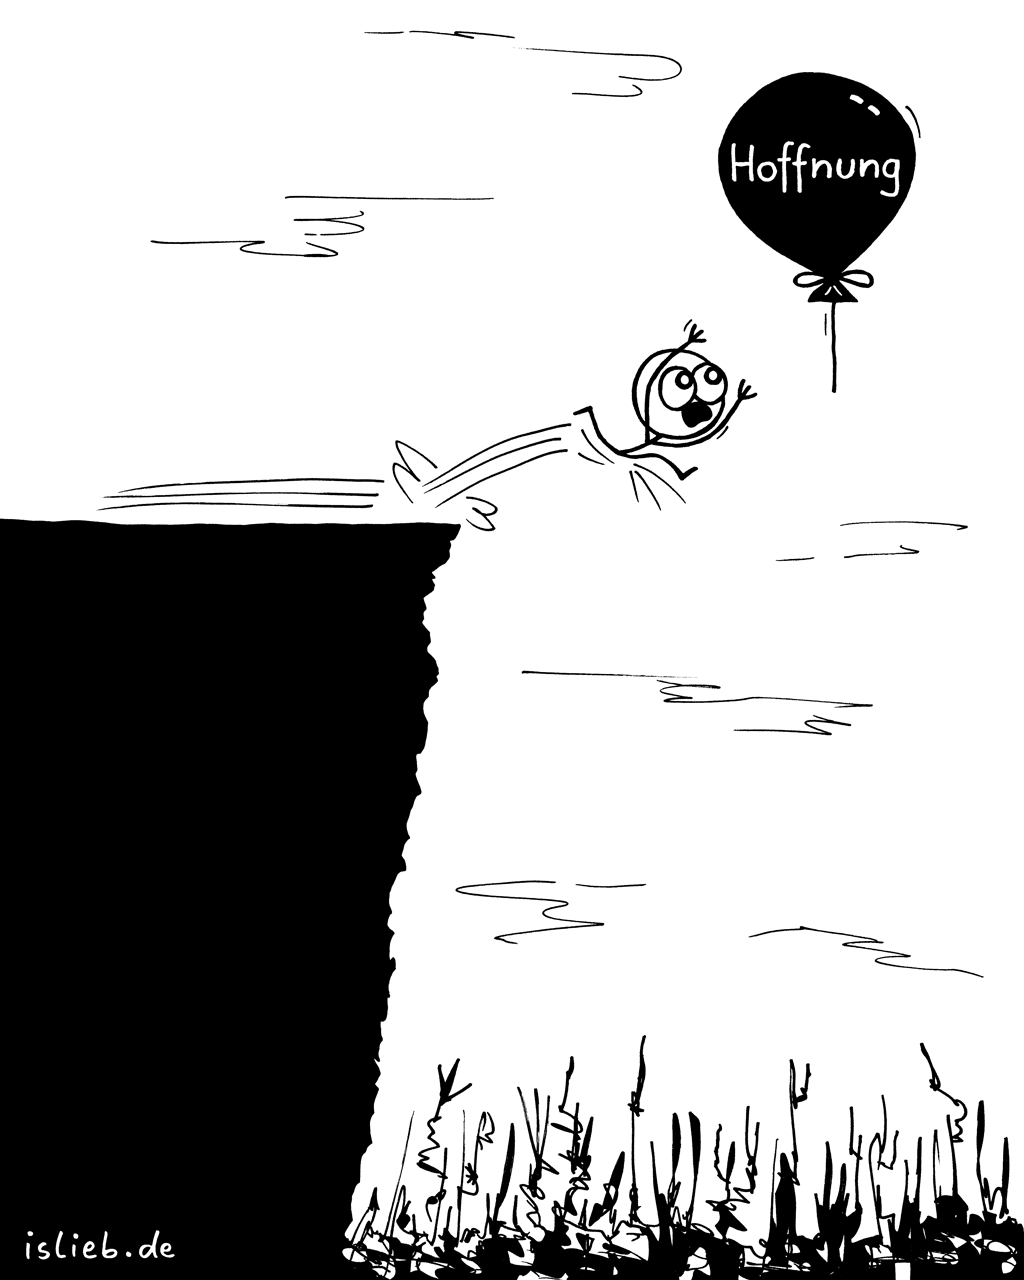 Knapp | Hoffnungs-Cartoon | is lieb?